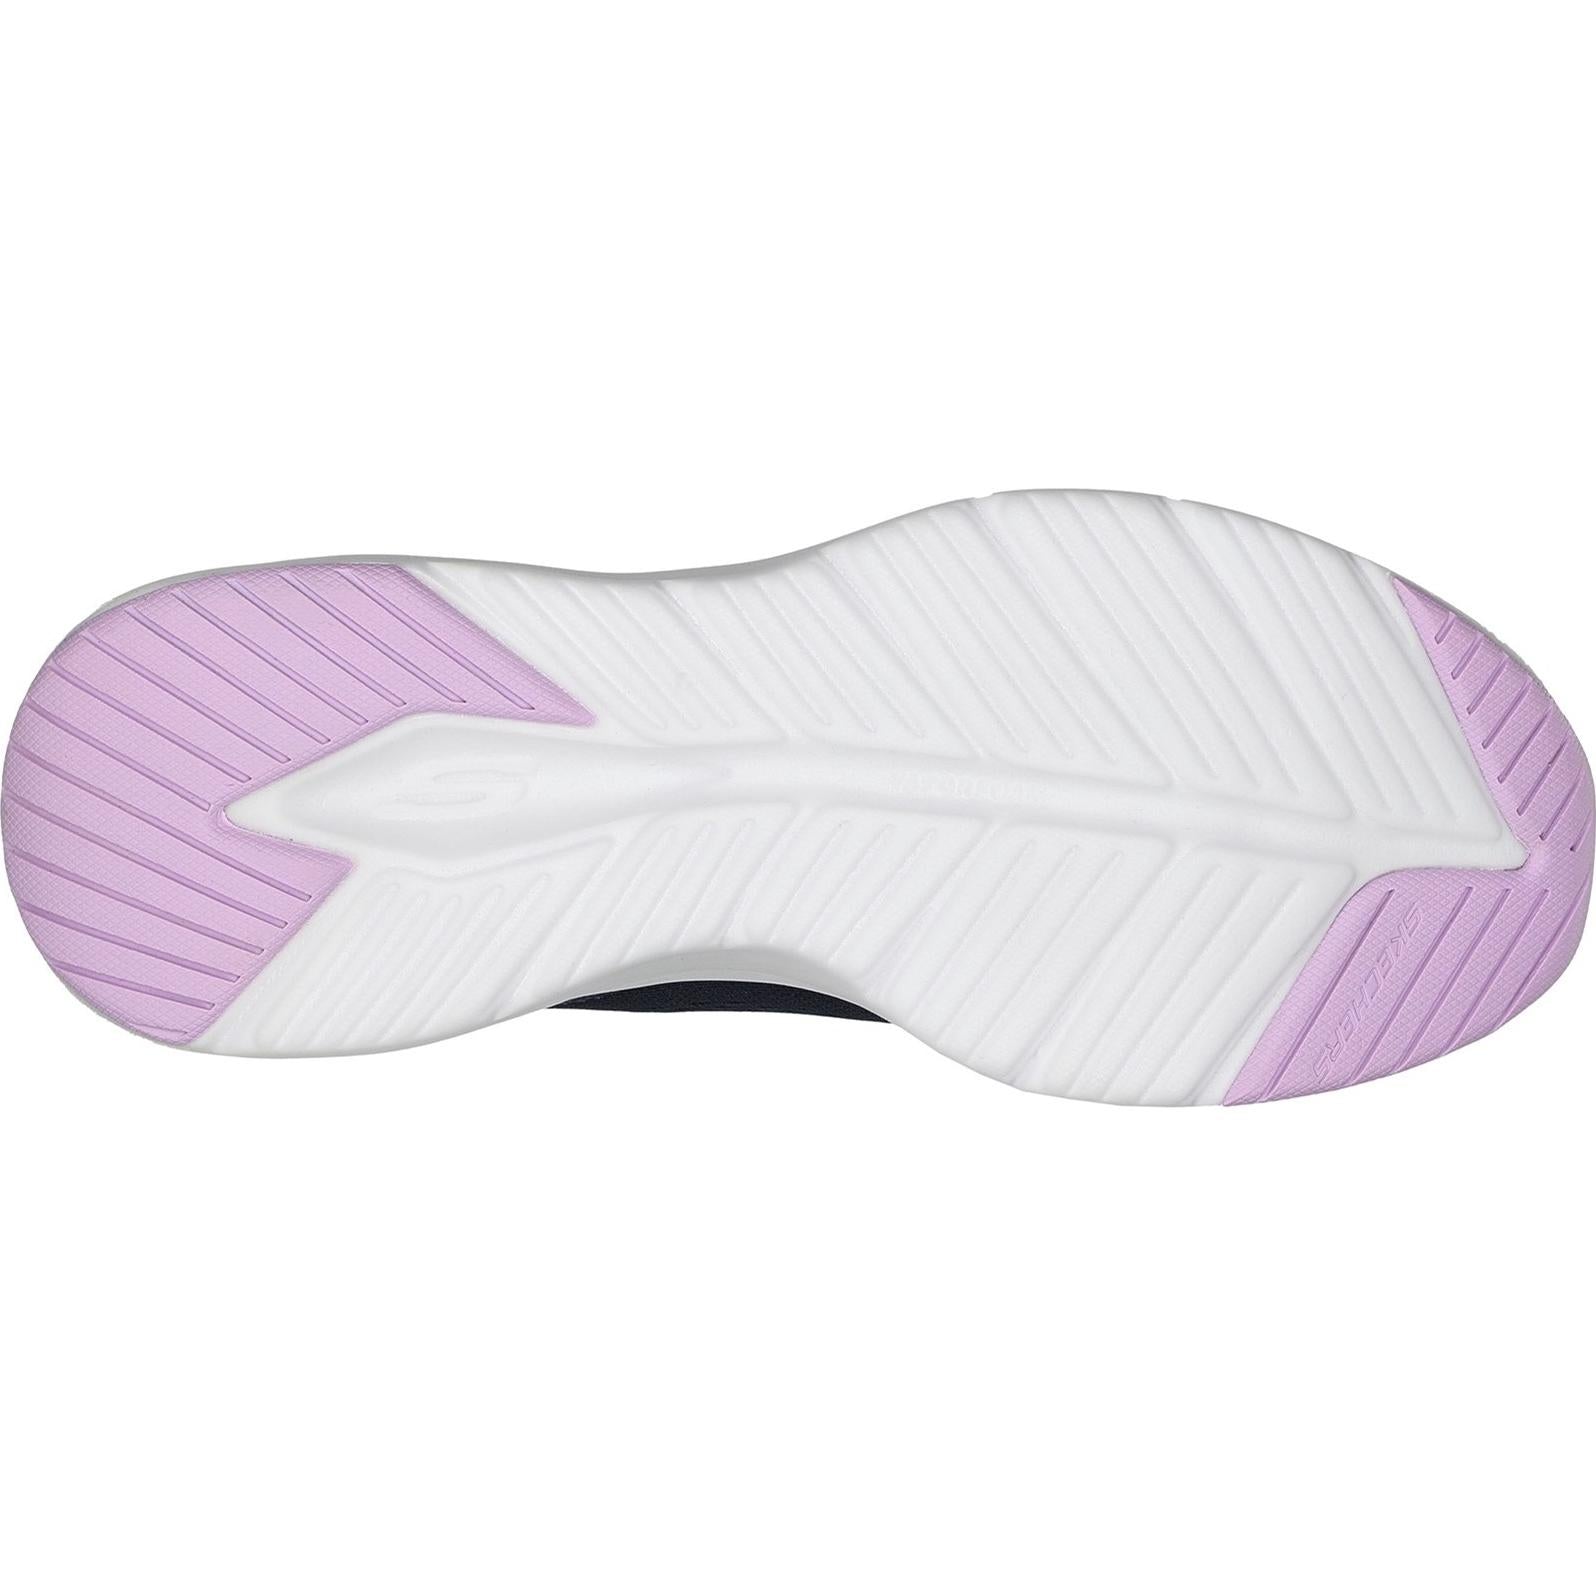 Skechers Vapor Foam - Fresh Trend Shoe